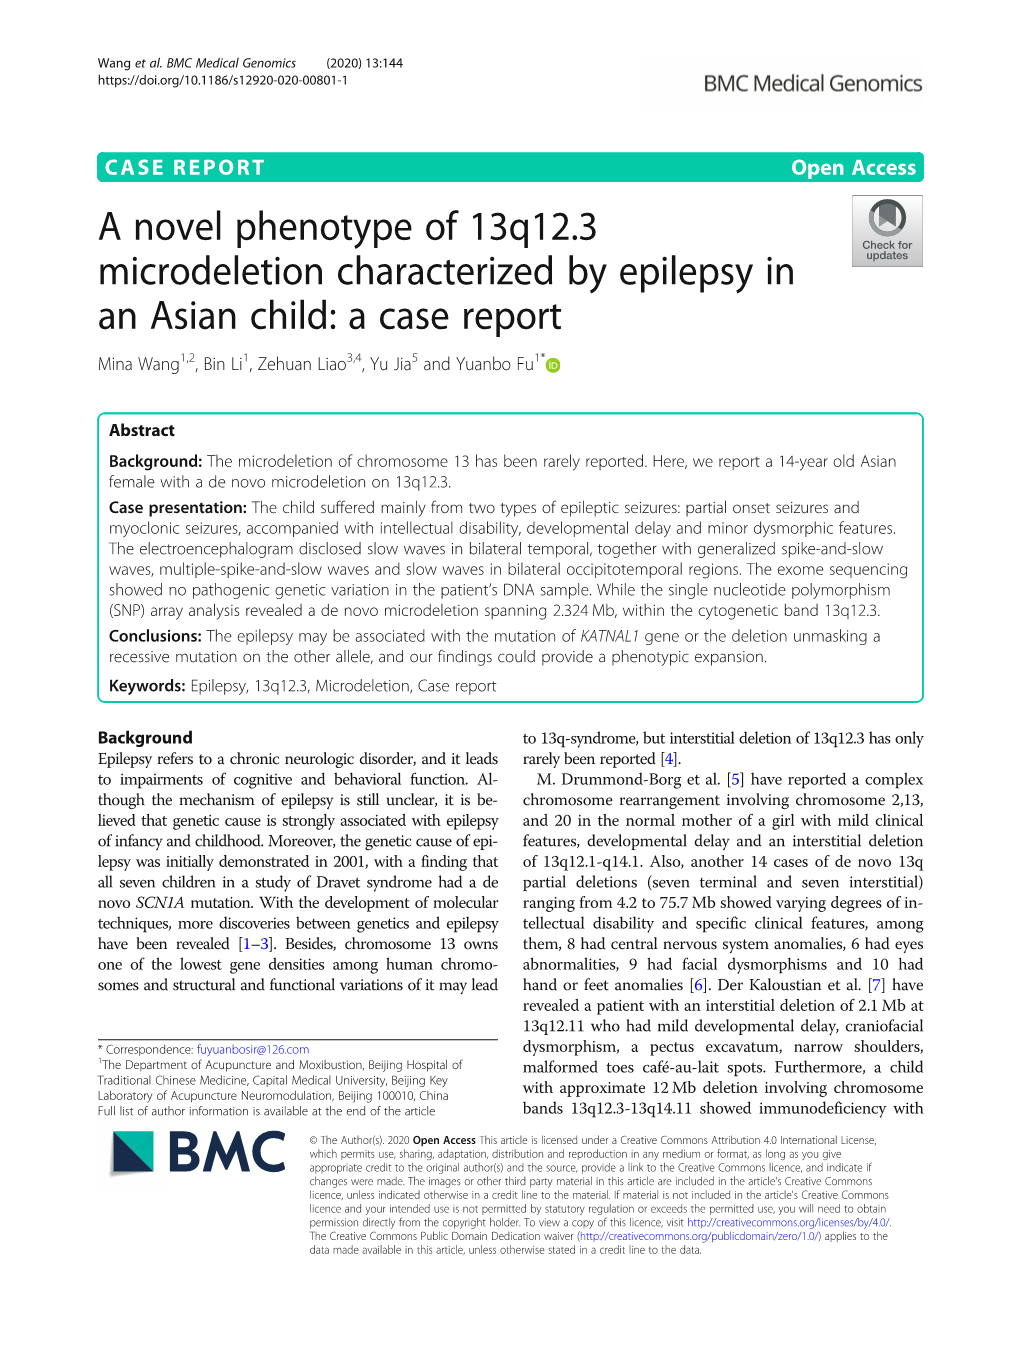 A Novel Phenotype of 13Q12.3 Microdeletion Characterized by Epilepsy in an Asian Child: a Case Report Mina Wang1,2, Bin Li1, Zehuan Liao3,4, Yu Jia5 and Yuanbo Fu1*